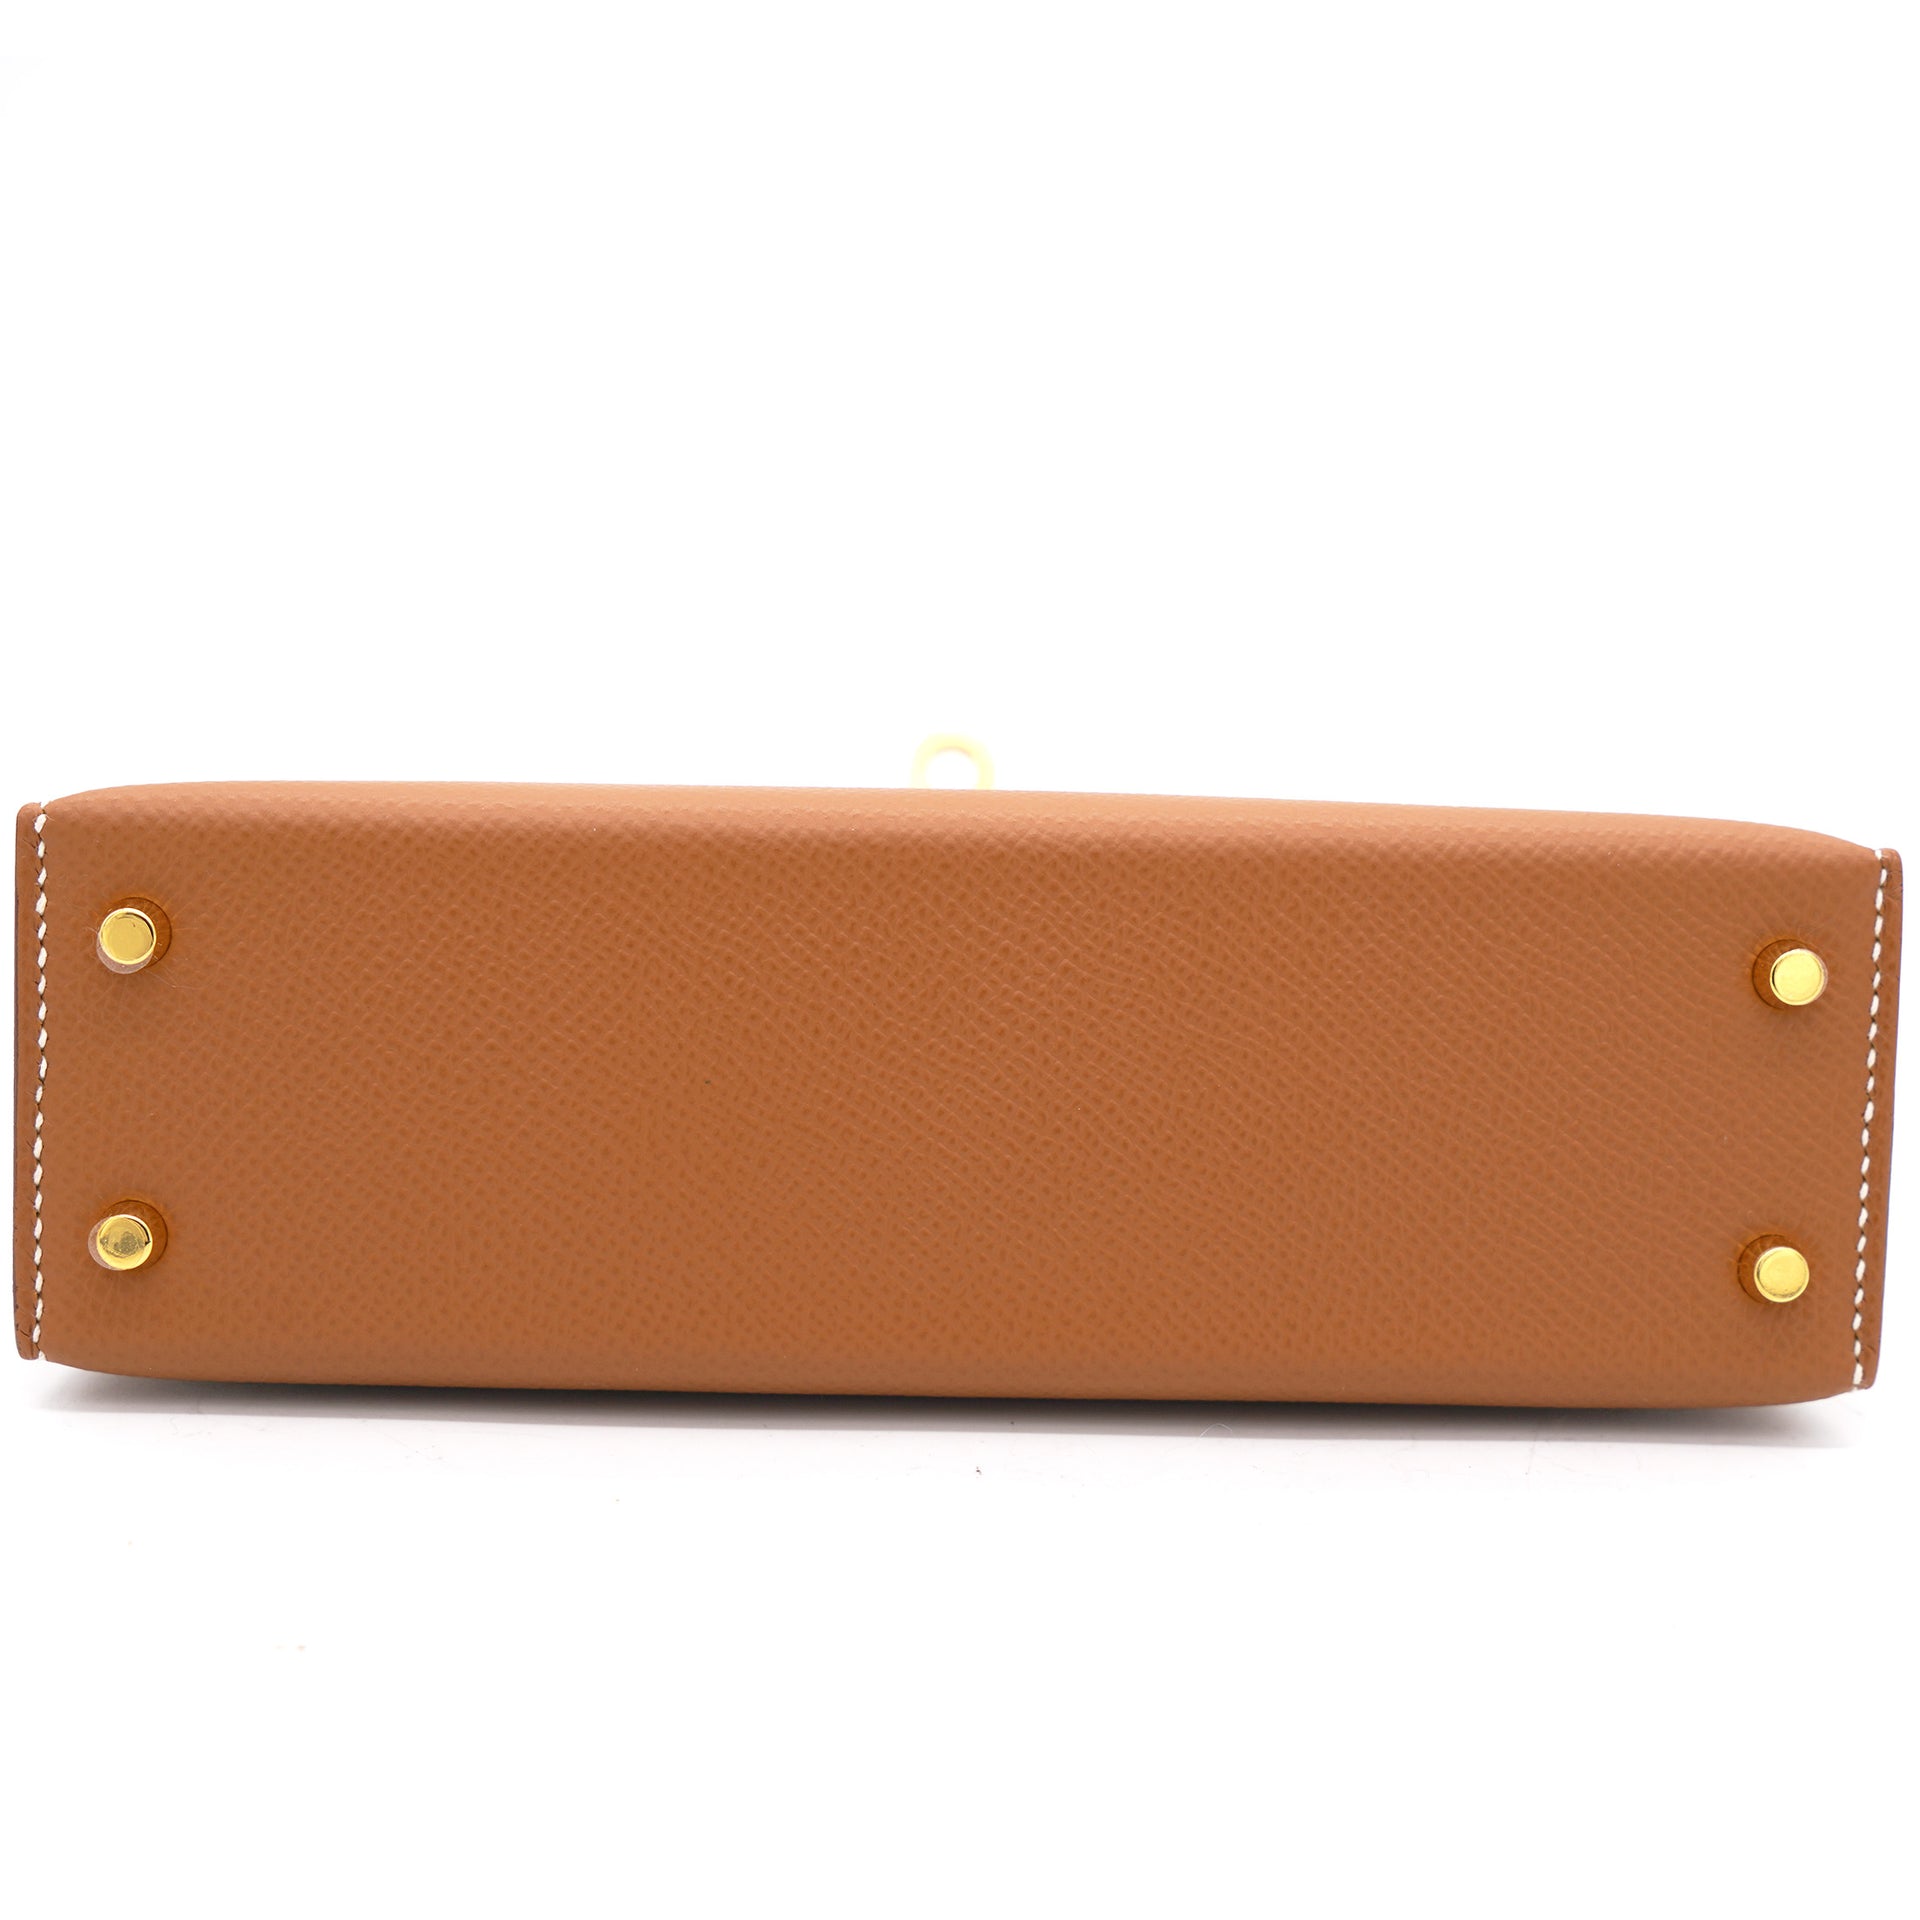 Gold Epsom Leather Gold Hardware Mini II Kelly Bag